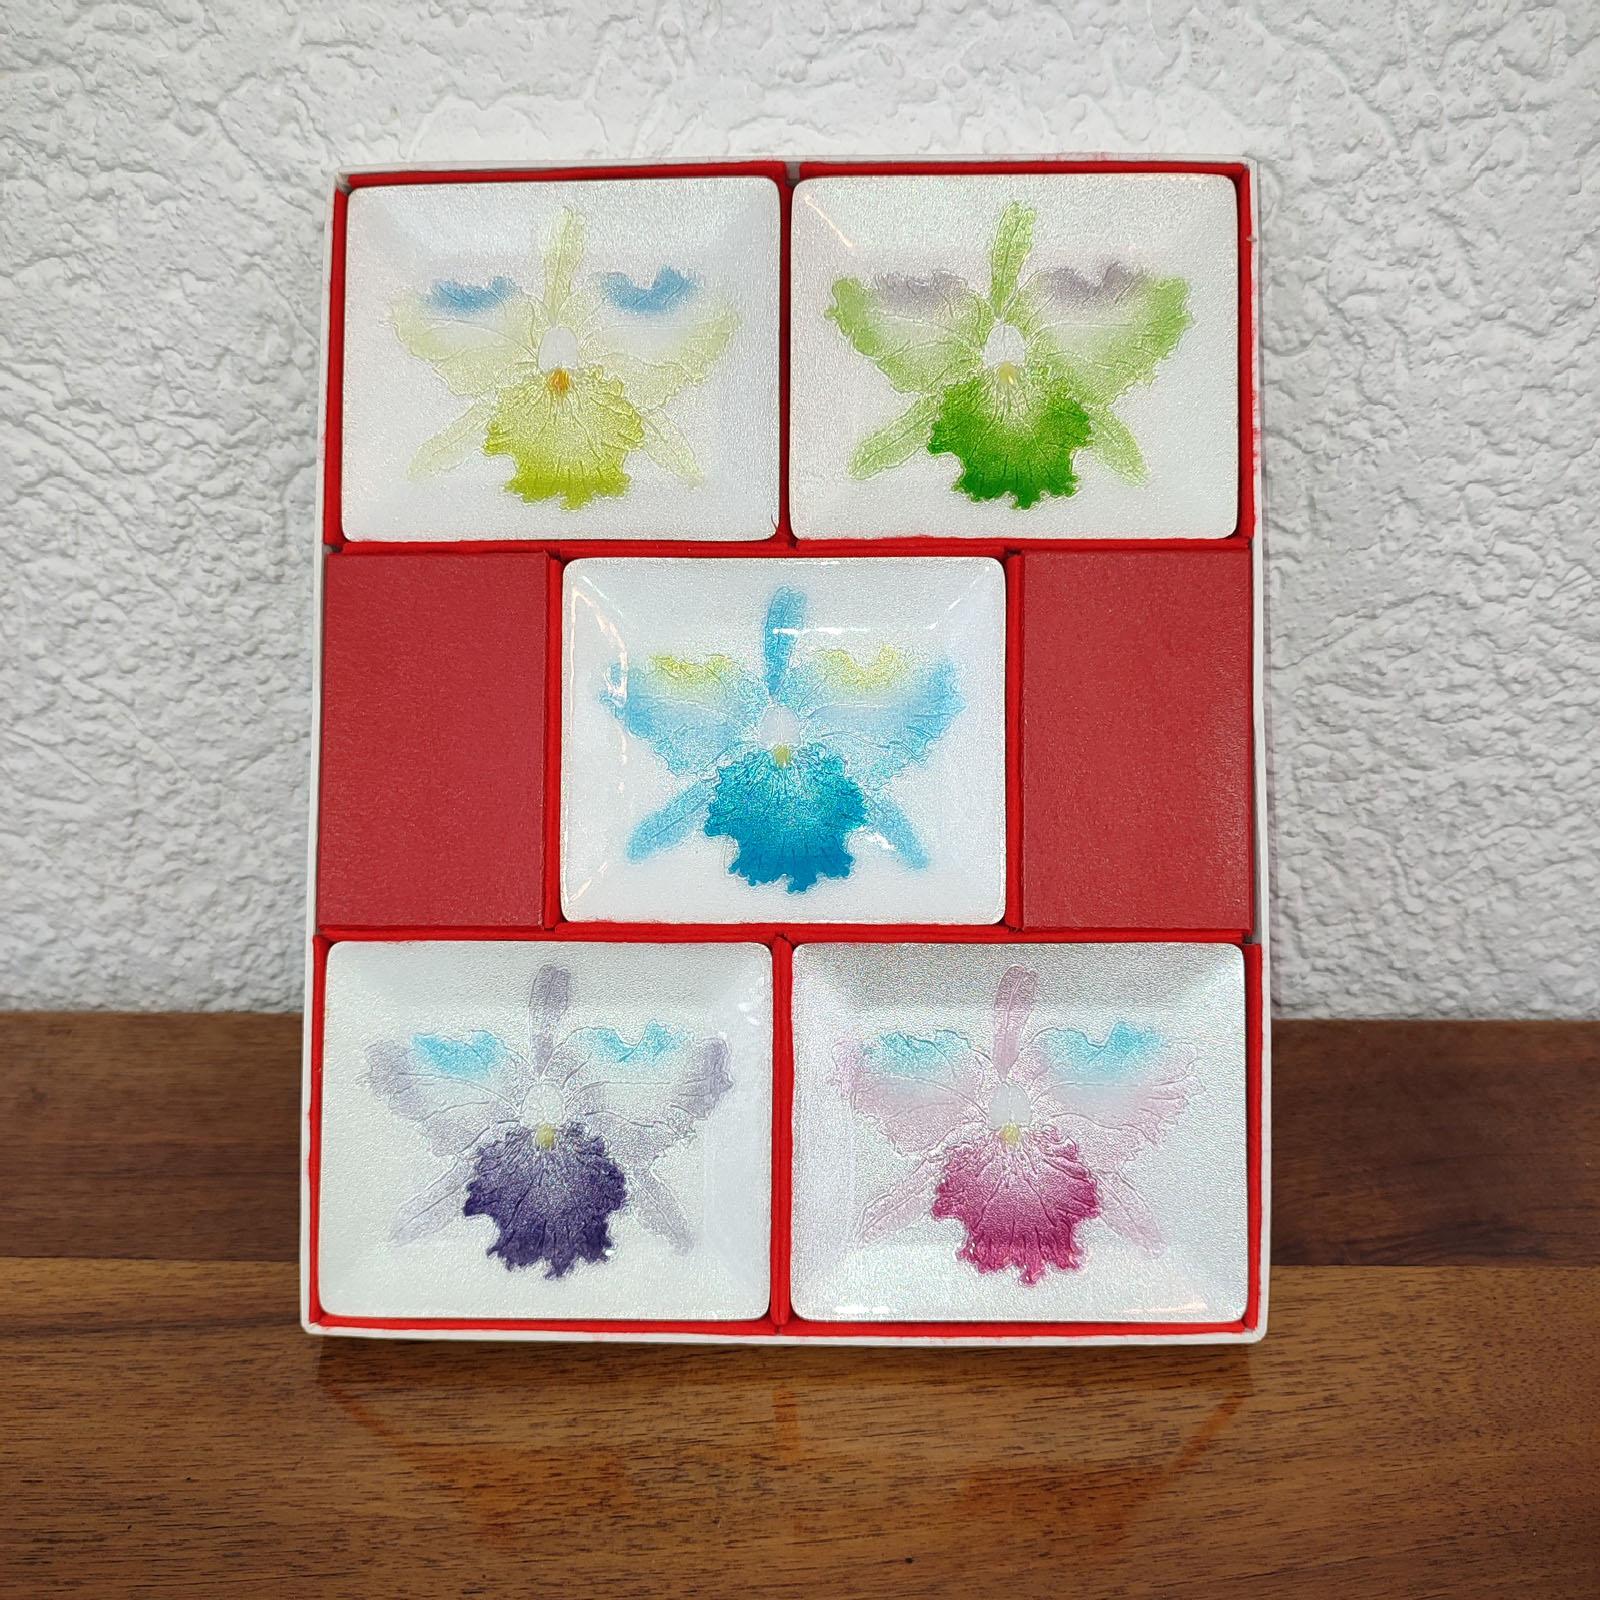 Vintage Japanese Cloisonné Set von 5 Stück Sushi-Teller mit Orchidee Design, jedes in einer anderen Farbe. Im Originalkarton. Ausgezeichneter Zustand.
Abmessungen: 12x10 cm pro Stück, Schachtel 32x26x2 cm.